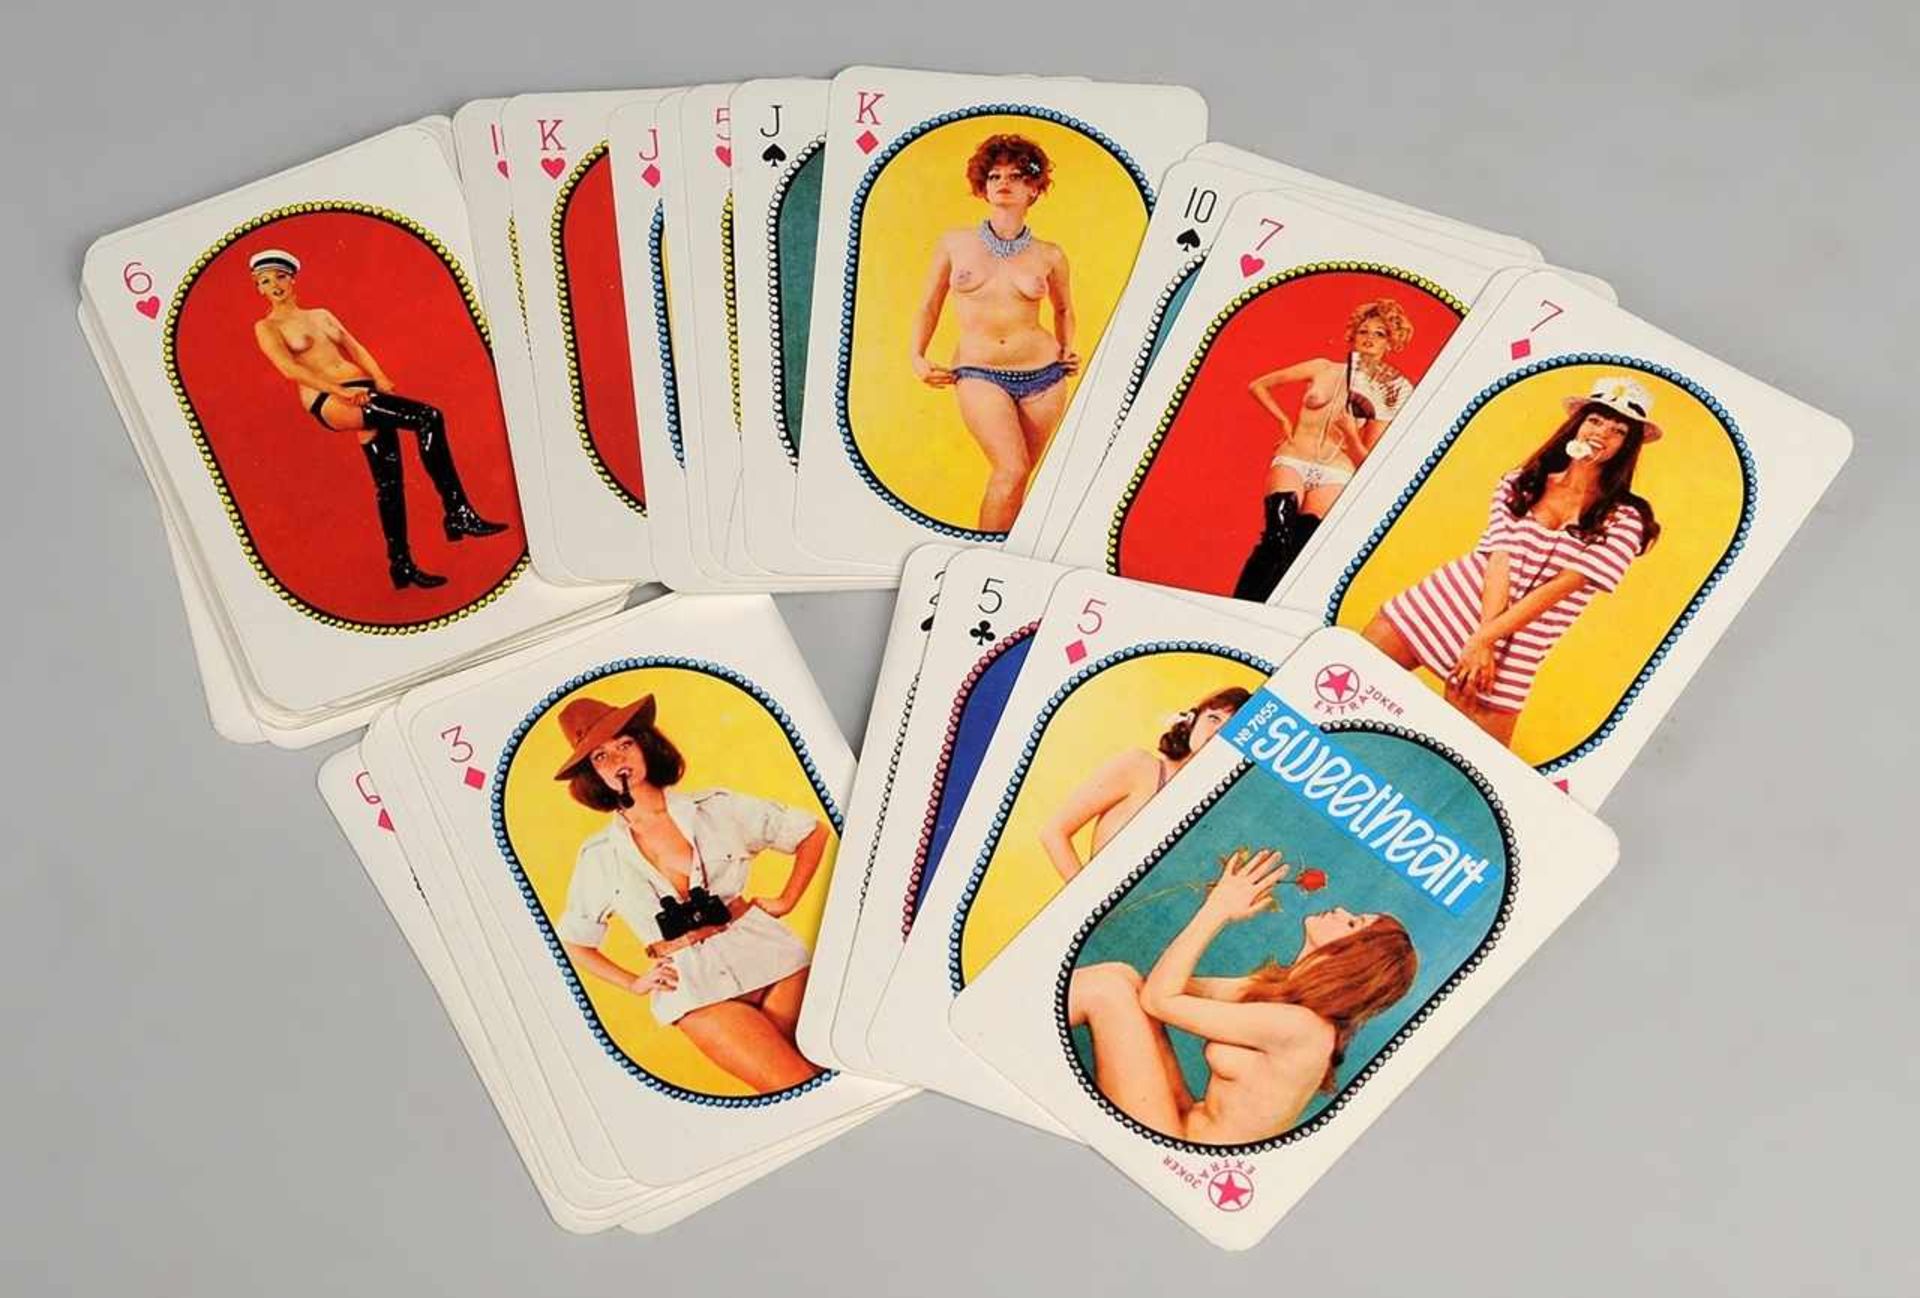 Erotik-Kartenspiel "Sweetheart" No. 7055 55 Rommé/ Canasta-Spielkarten mit weiblichen